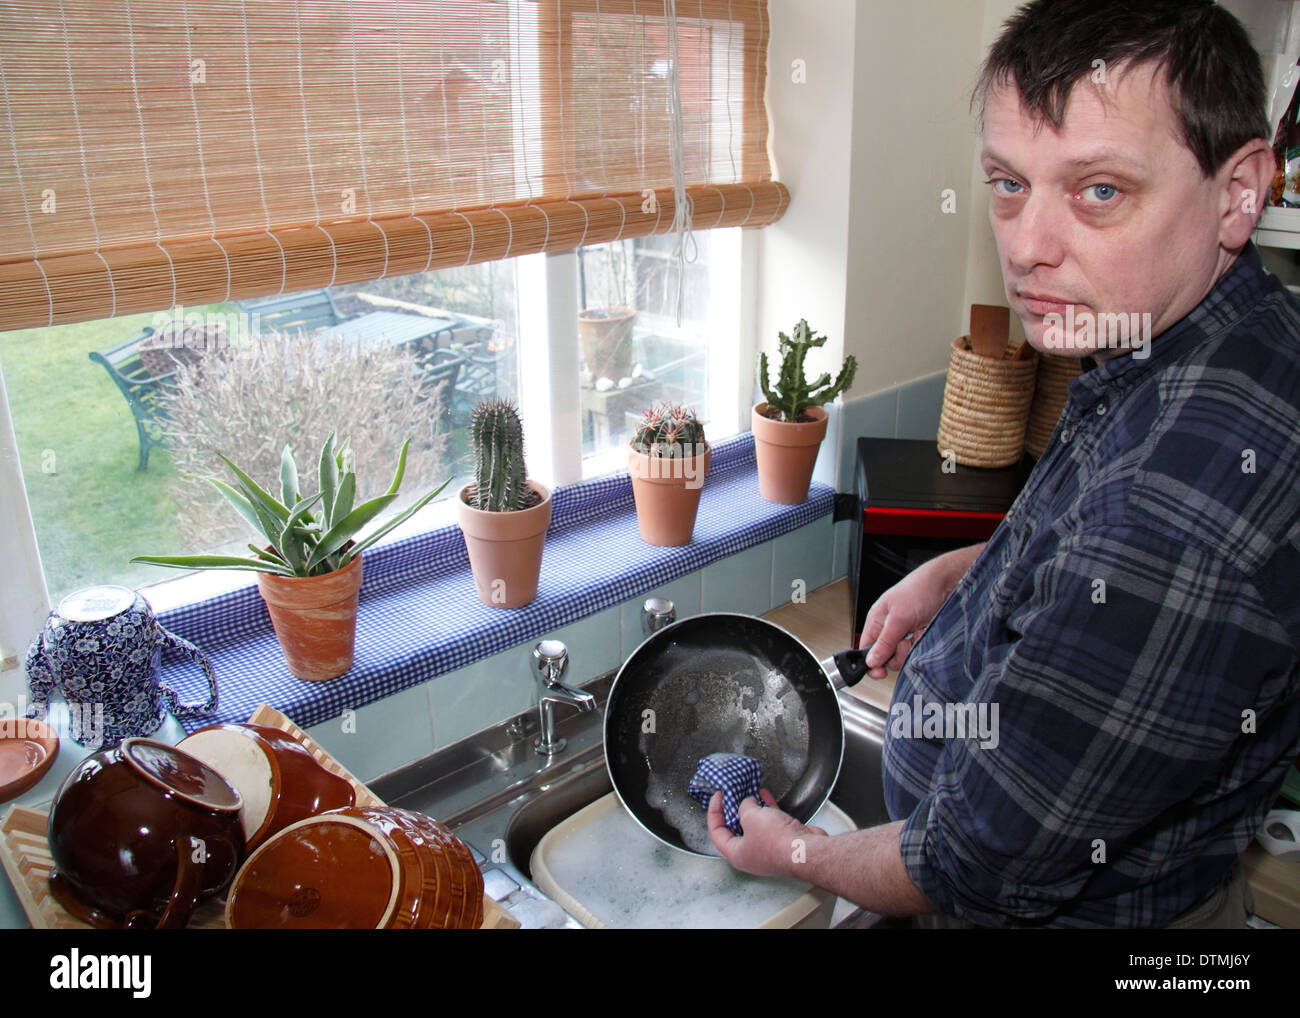 Mann waschen Töpfe mit kleinen Enthuiasm bei einer Küchenspüle zu Hause, England, UK Stockfoto